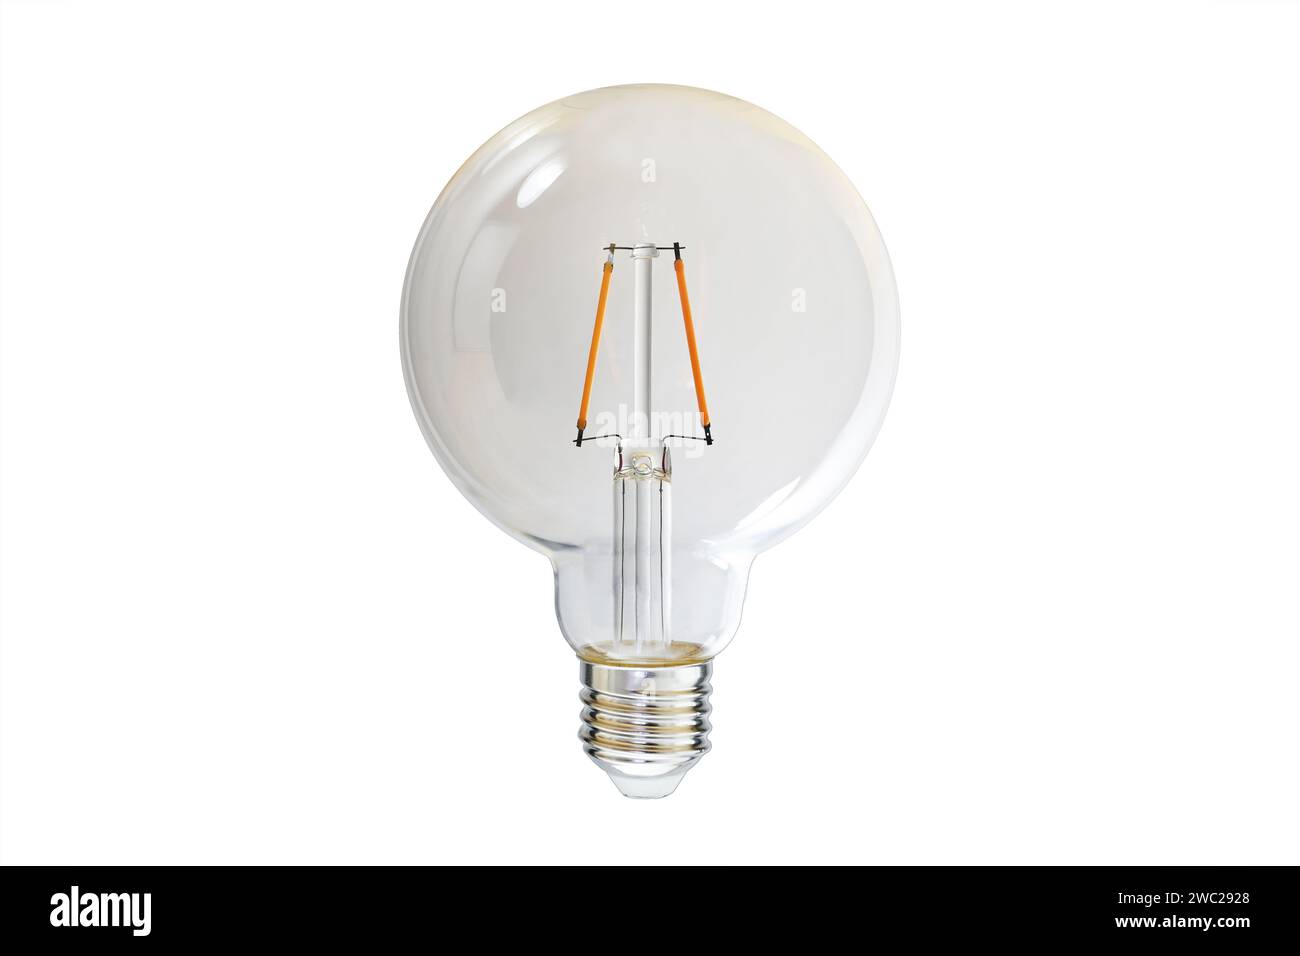 Lampe LED avec verre transparent clair et deux filaments orange, design nostalgique pour ressembler à une ampoule à incandescence traditionnelle, isolée sur un coup Banque D'Images